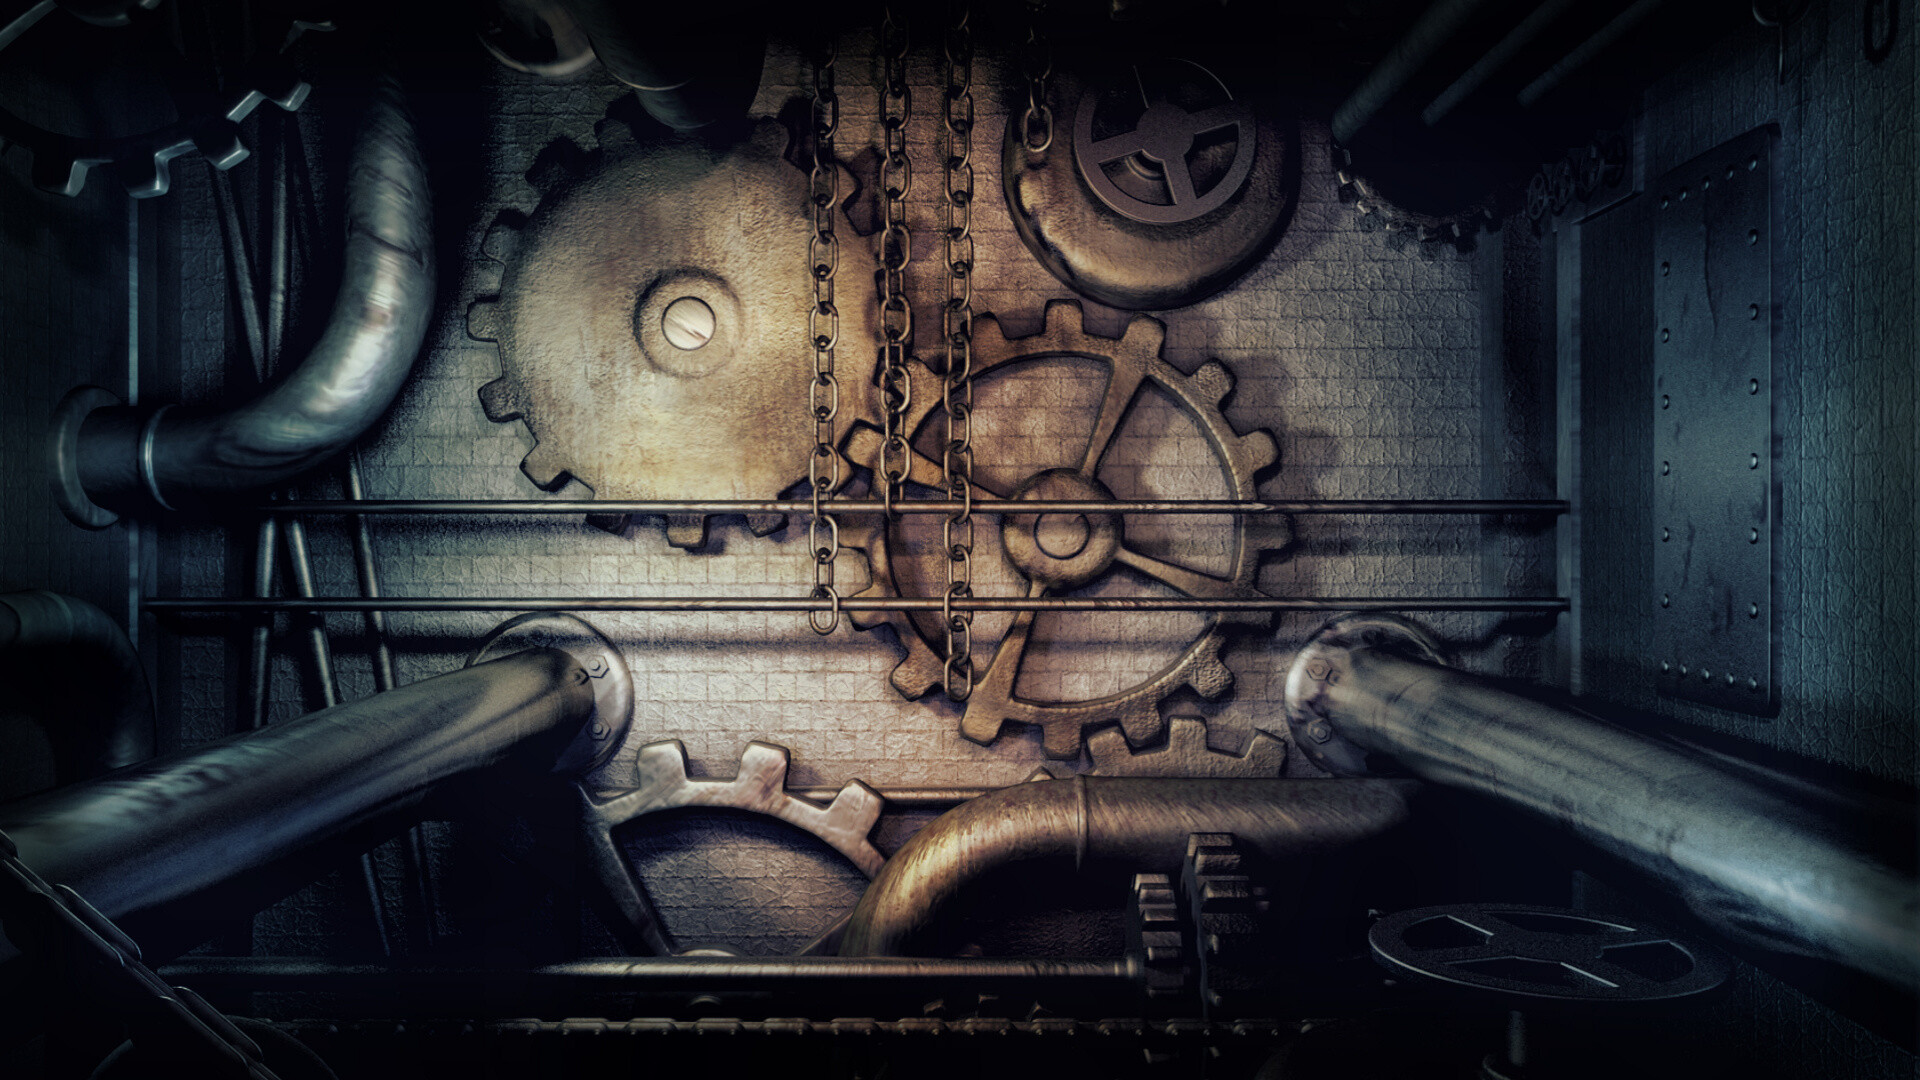 Gear: Steampunk dark machine, Pipes, Chains, A rotating circular mechanism part. 1920x1080 Full HD Wallpaper.